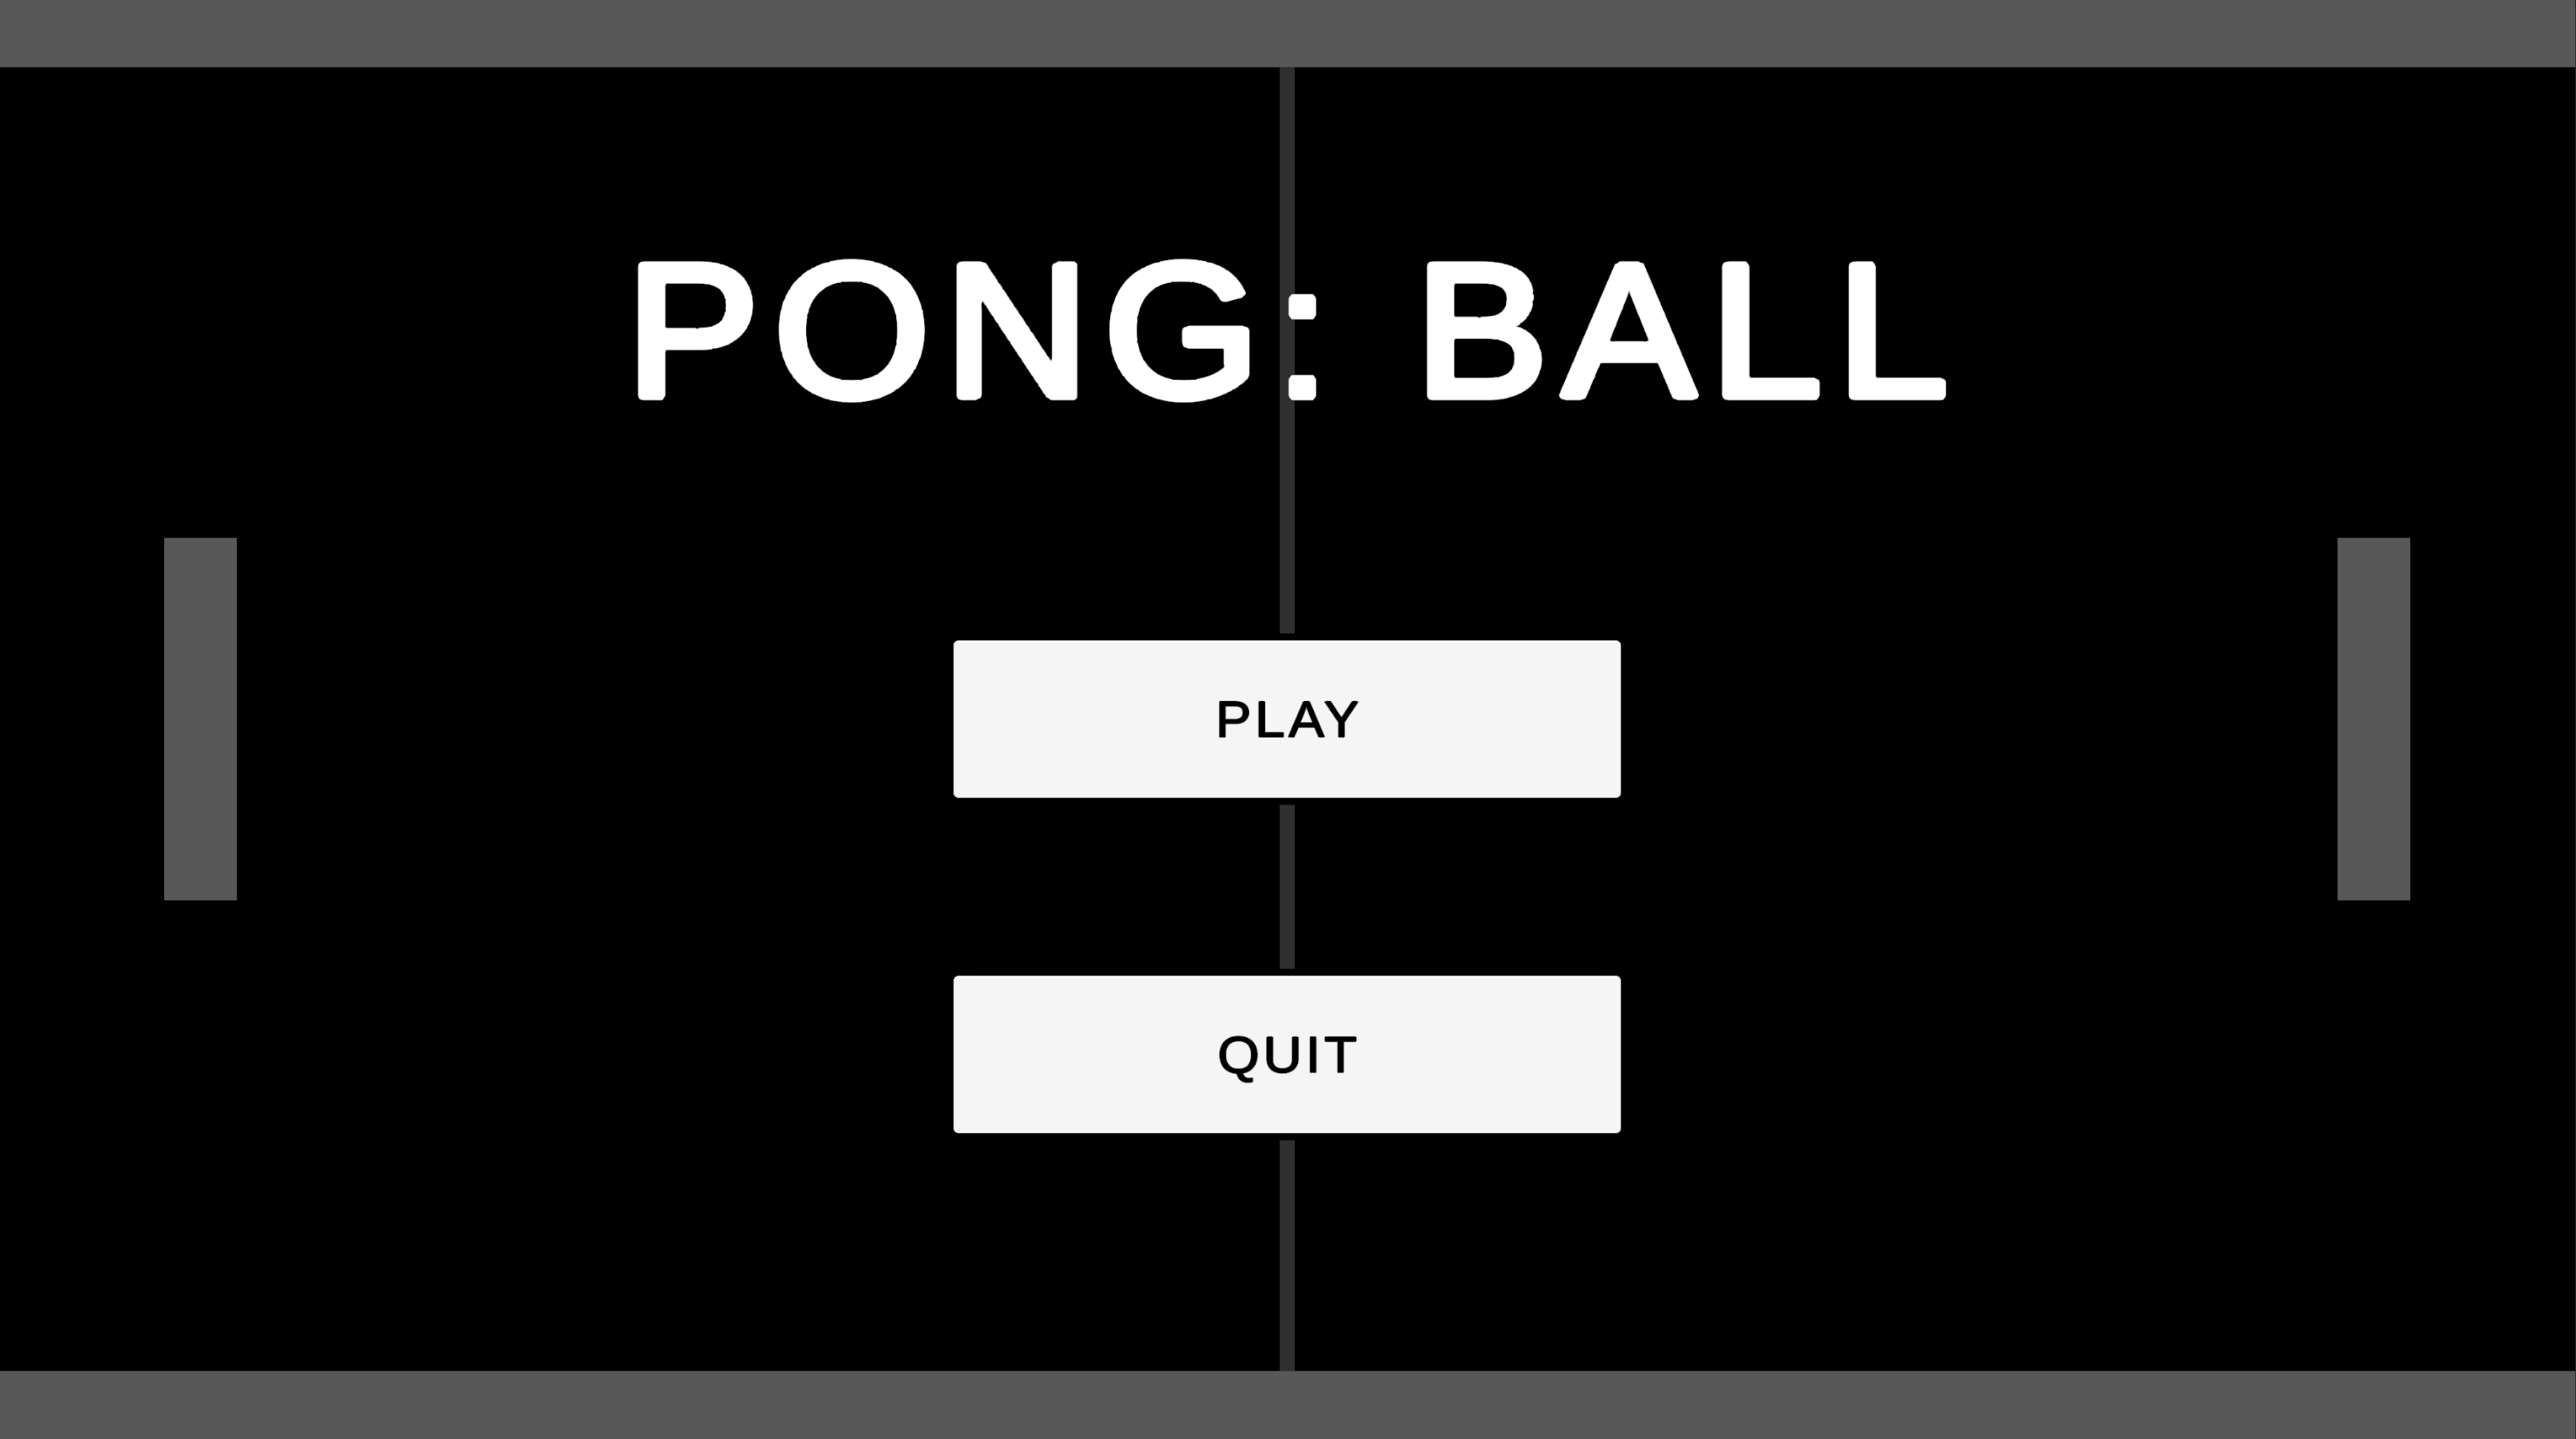 Pong: Ball